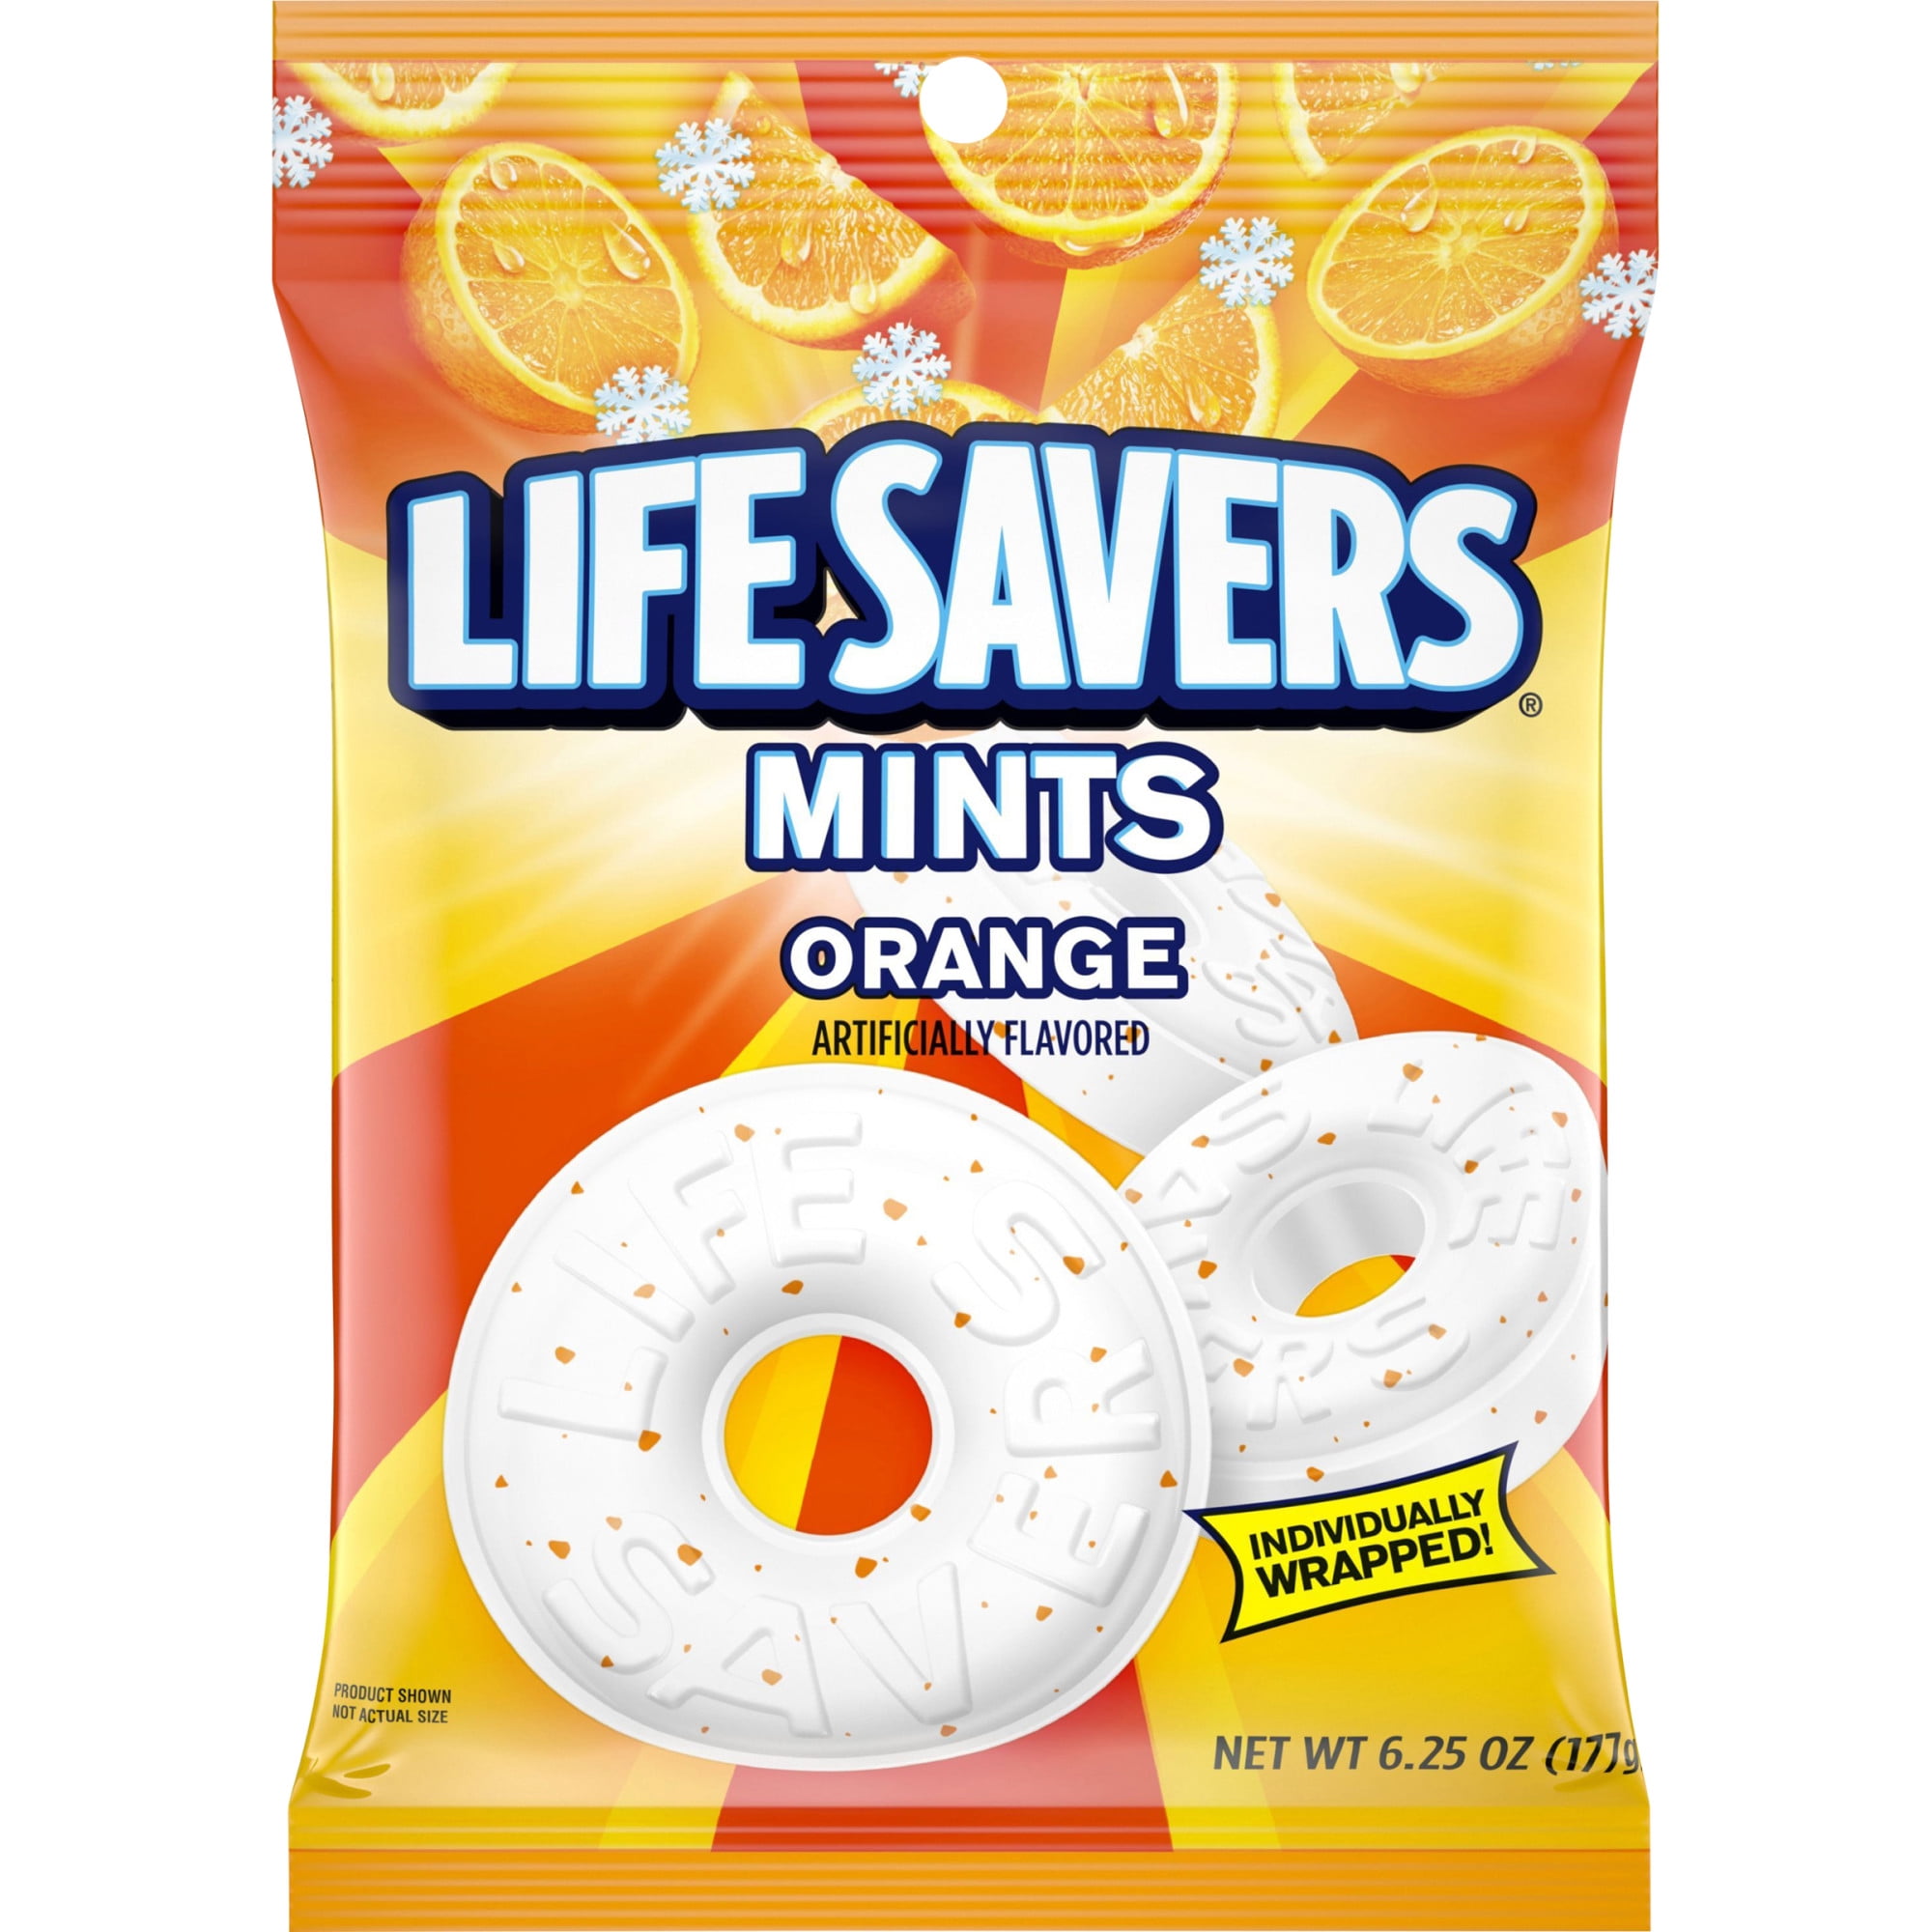 Mint hard. Life Savers конфеты. Конфеты "Life Savers" wint-o-Green. Discovery Orange & Mint ("Дискавери оранж энд минт"), ж/б, 0,45 л.